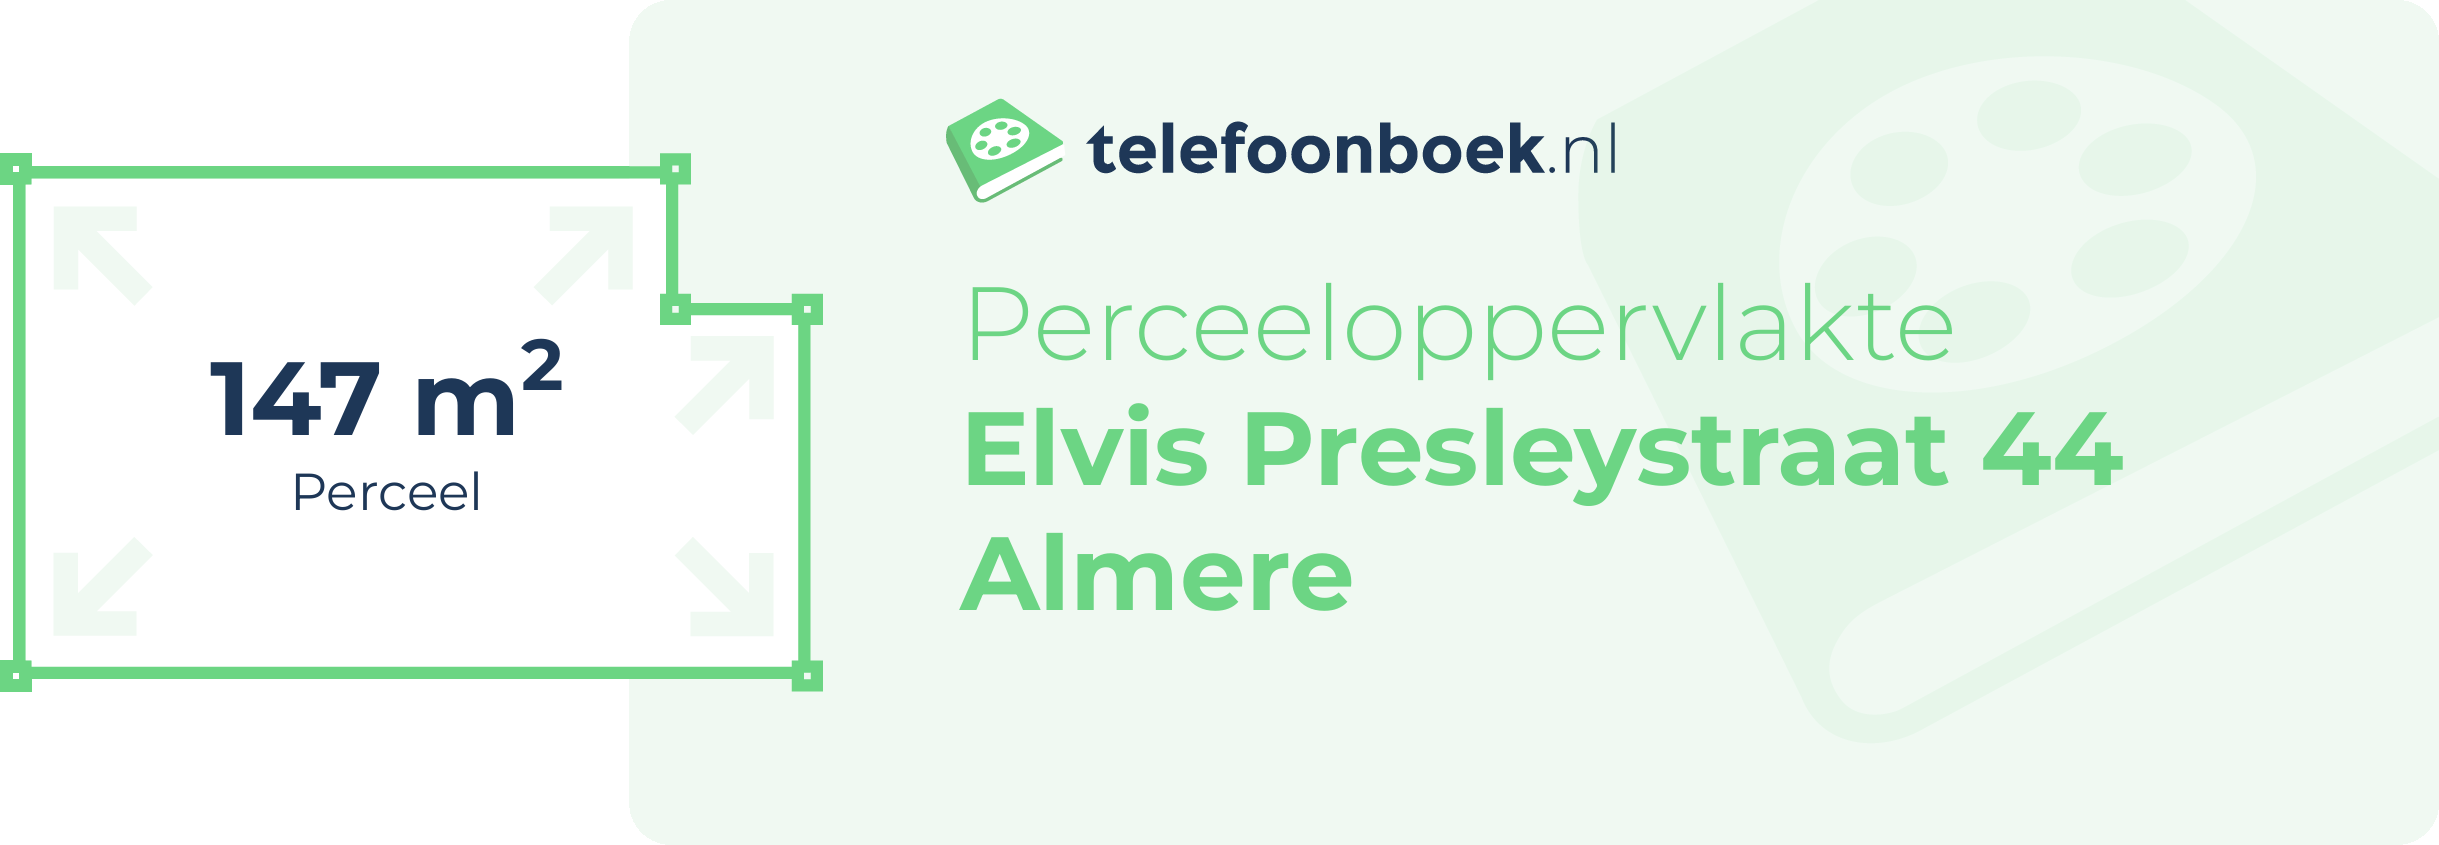 Perceeloppervlakte Elvis Presleystraat 44 Almere